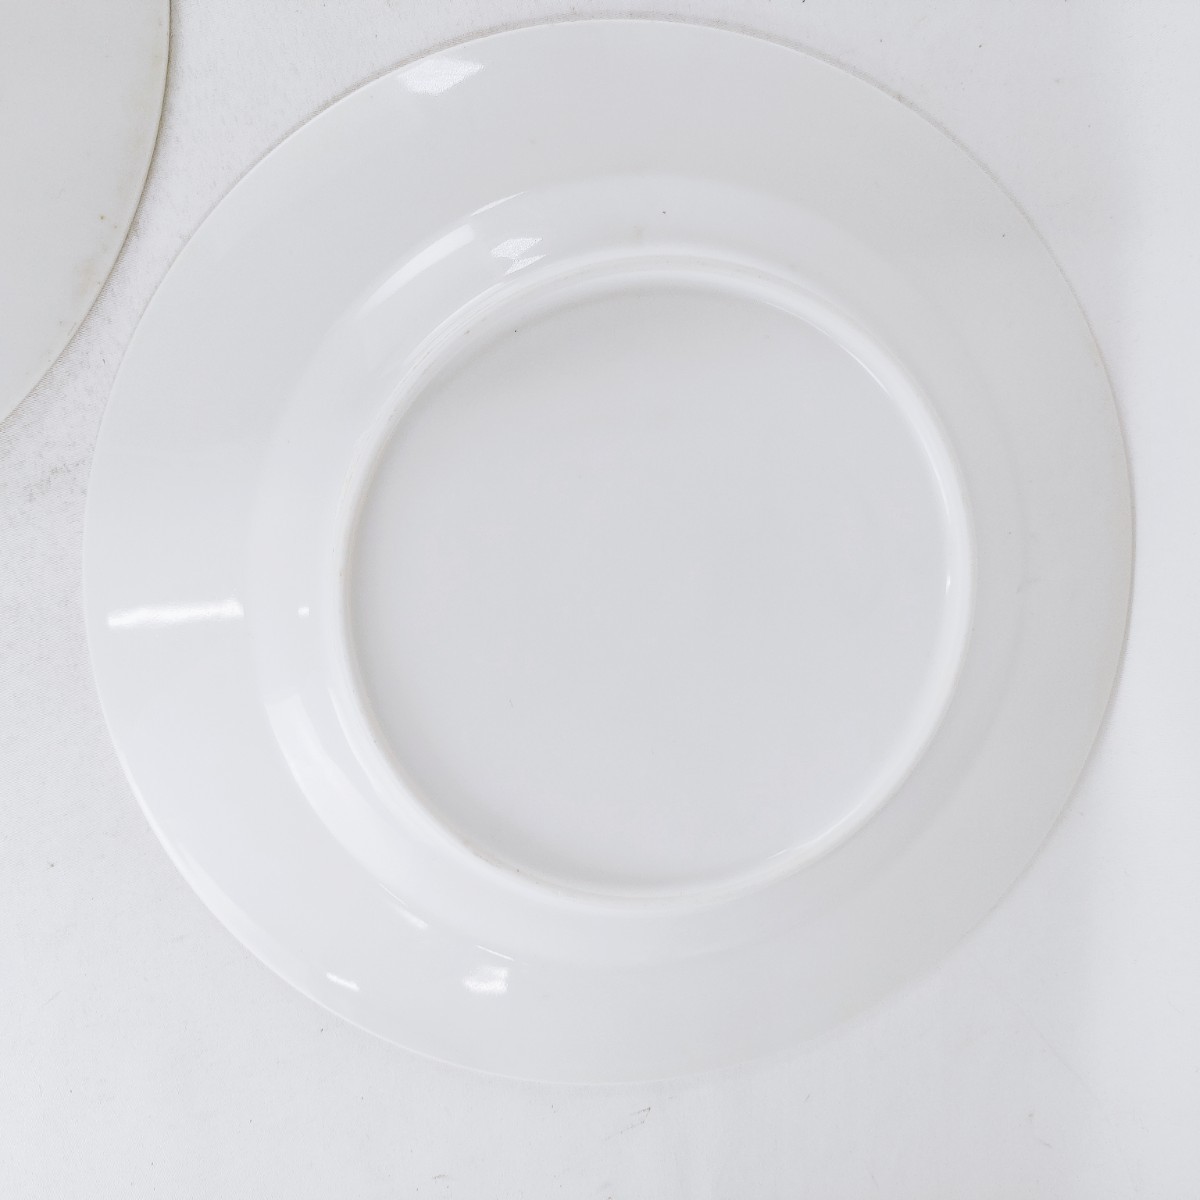 【レトロ】大皿 食器 花柄 薔薇 陶磁器 盛り皿 飾り皿 絵皿 金彩 ホワイト系 食器 洋食器 アンティーク ヴィンテージ 昭和レトロ A-1_画像8